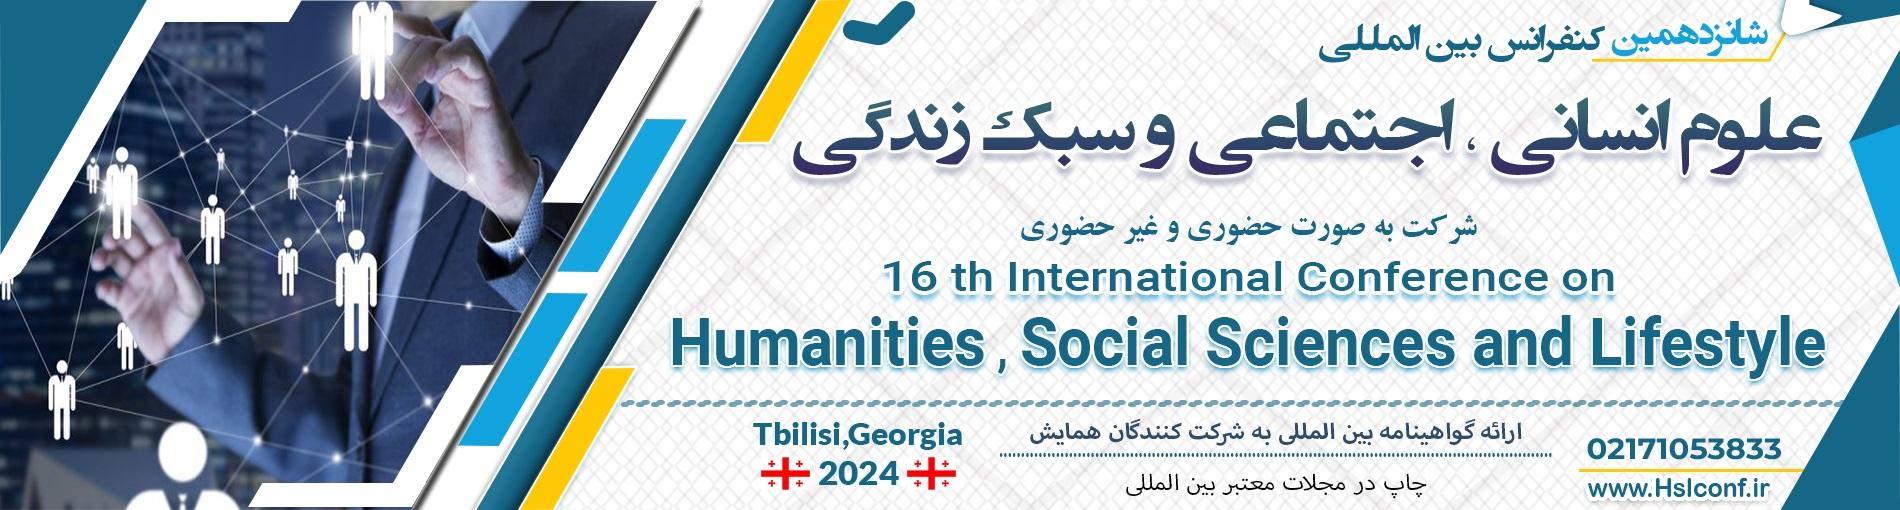 کنفرانس بین المللی علوم انسانی،اجتماعی و سبک زندگی